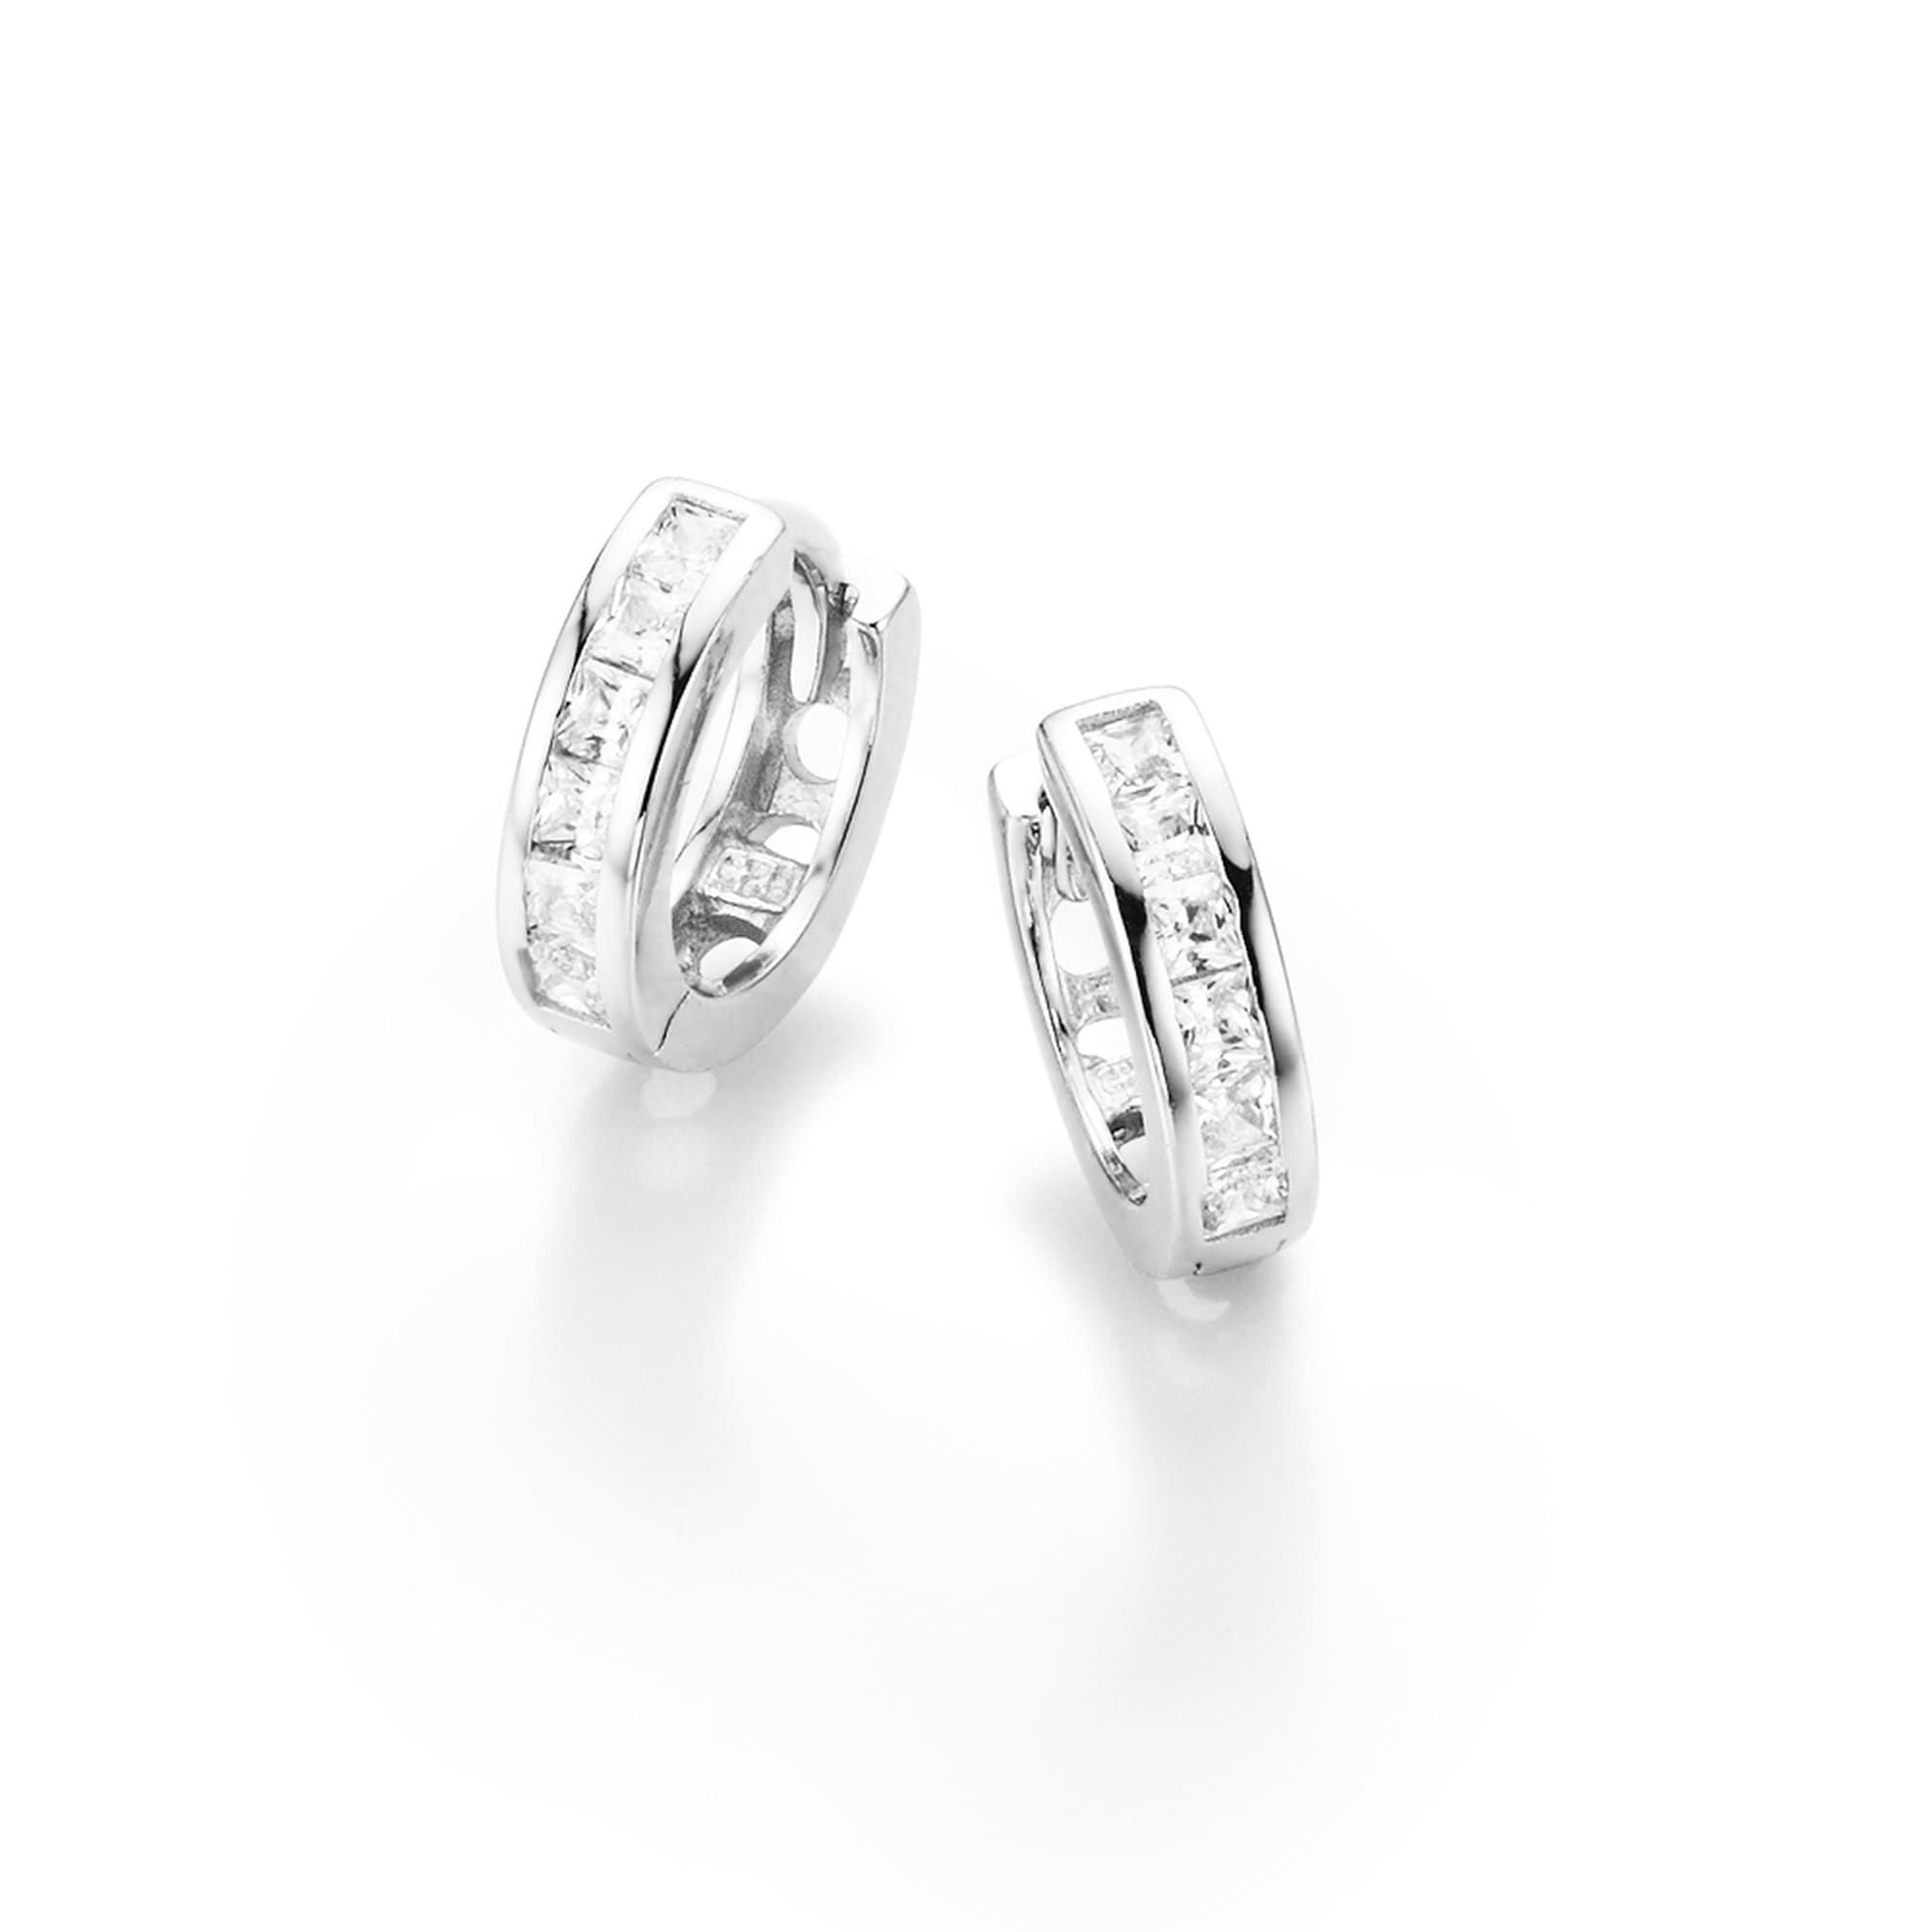 Smart Jewel Paar Creolen Steinen Zirkonia carréförmig 925 mit Silber